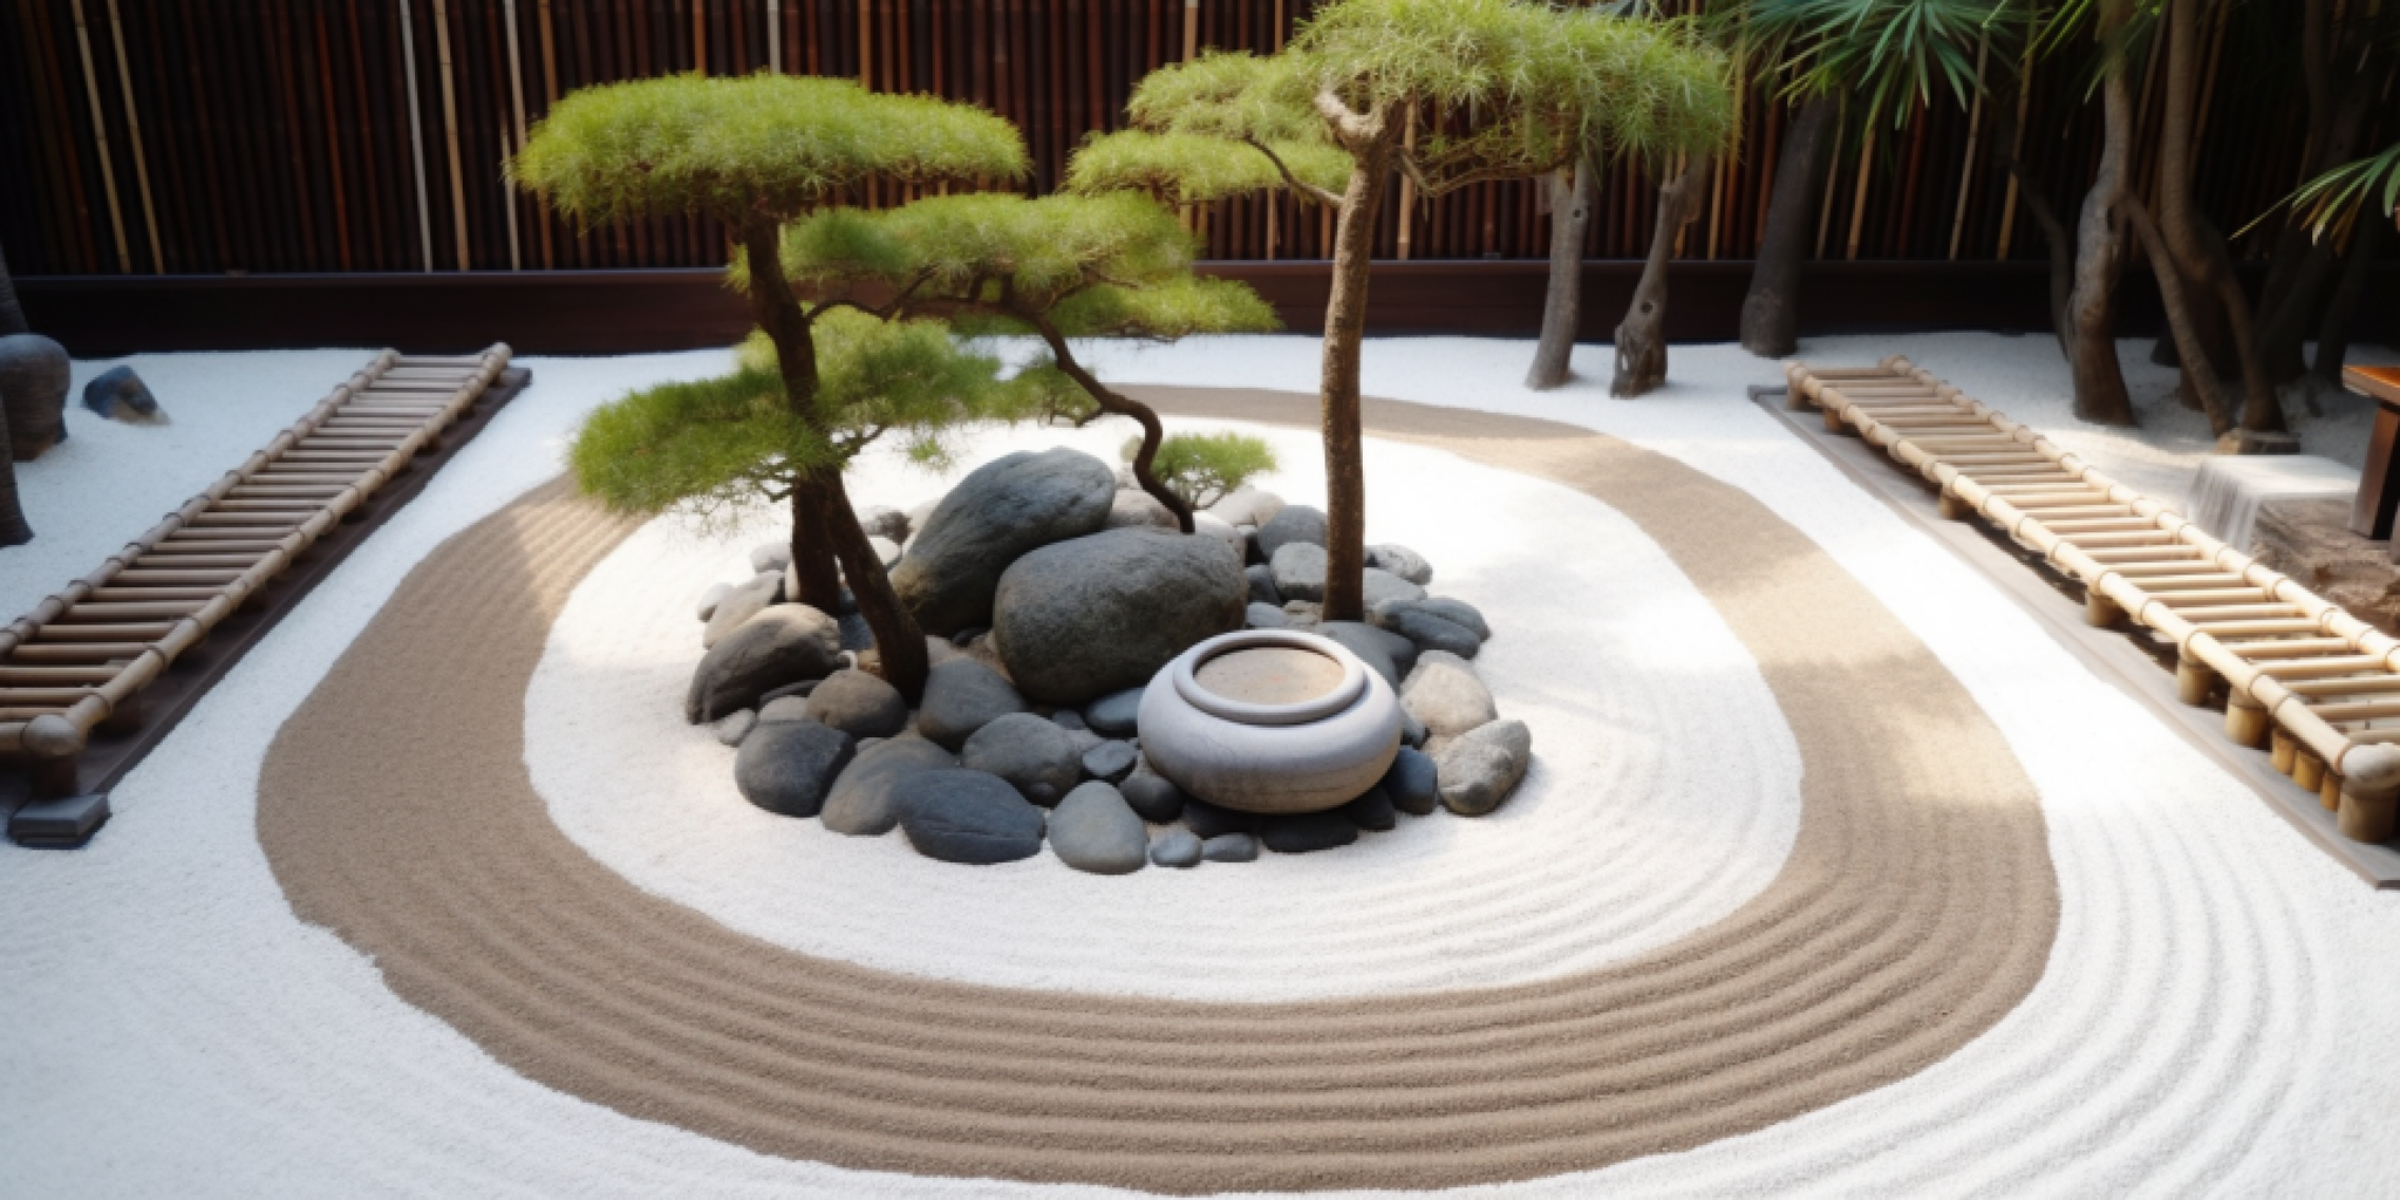 Create A Zen Garden At Home: Diy Guide